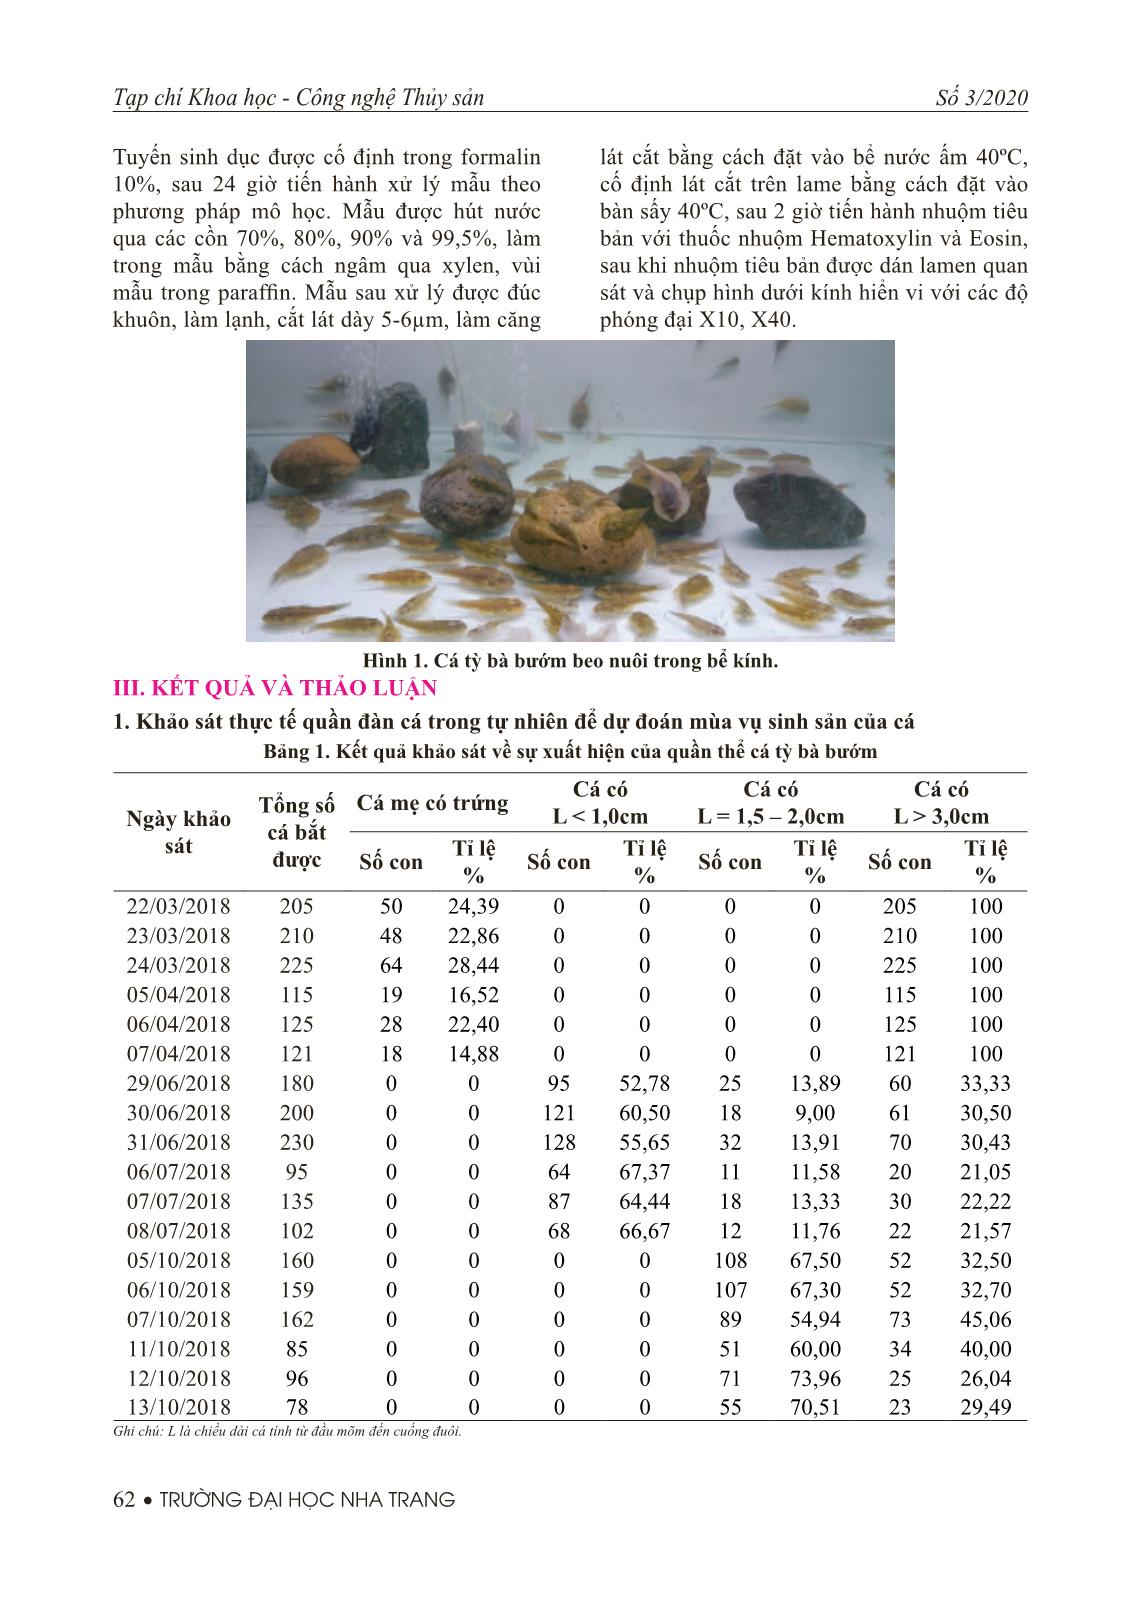 Khảo sát và theo dõi sự phát triển tuyến sinh dục của cá tỳ bà bướm beo (Sewellia elongate Roberts, 1998) trong điều kiện nuôi nhân tạo trang 3